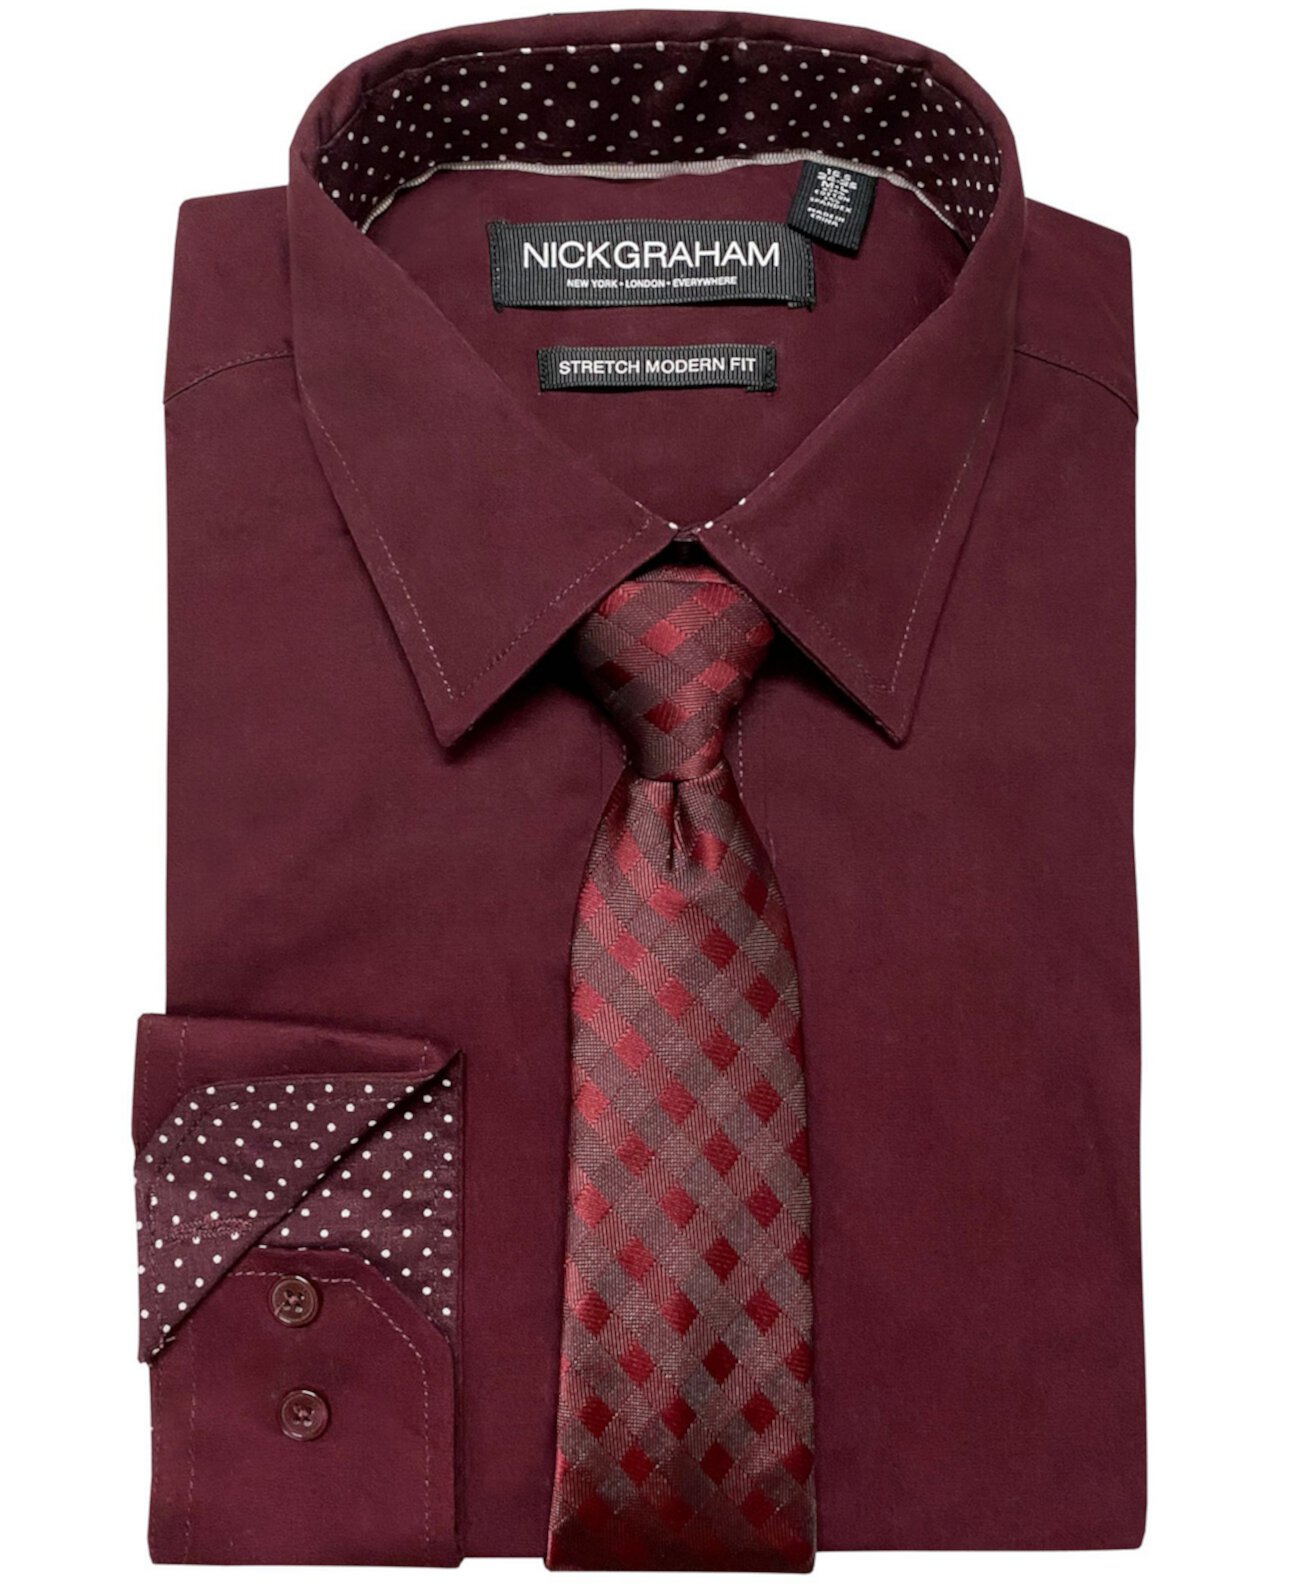 Мужская классическая рубашка-стрейч современного кроя и галстук в клетку в тон Nick Graham